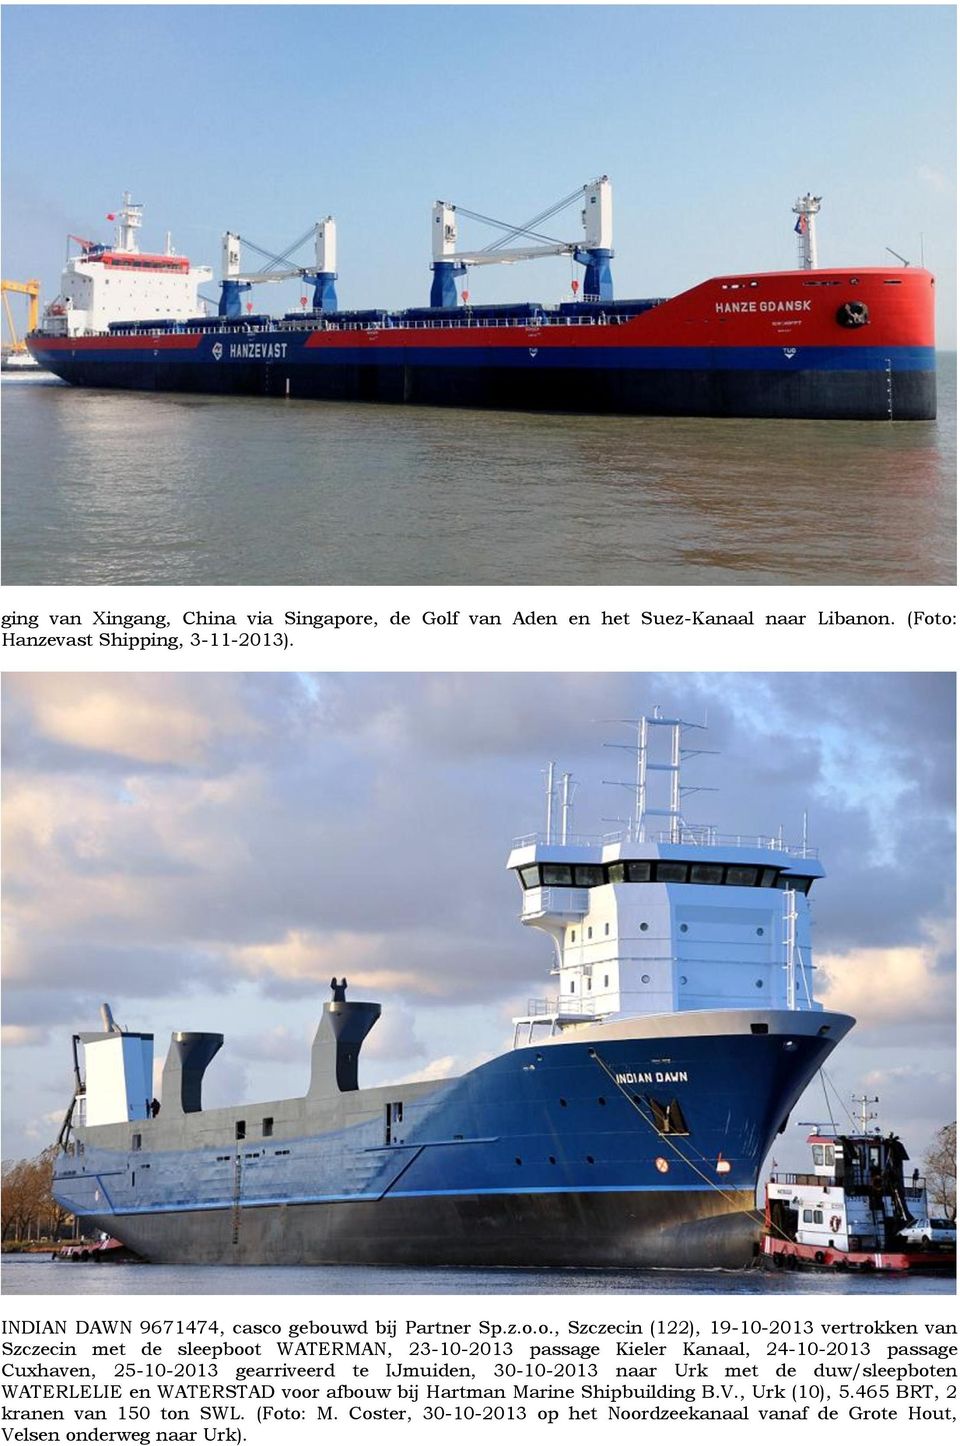 gebouwd bij Partner Sp.z.o.o., Szczecin (122), 19-10-2013 vertrokken van Szczecin met de sleepboot WATERMAN, 23-10-2013 passage Kieler Kanaal, 24-10-2013